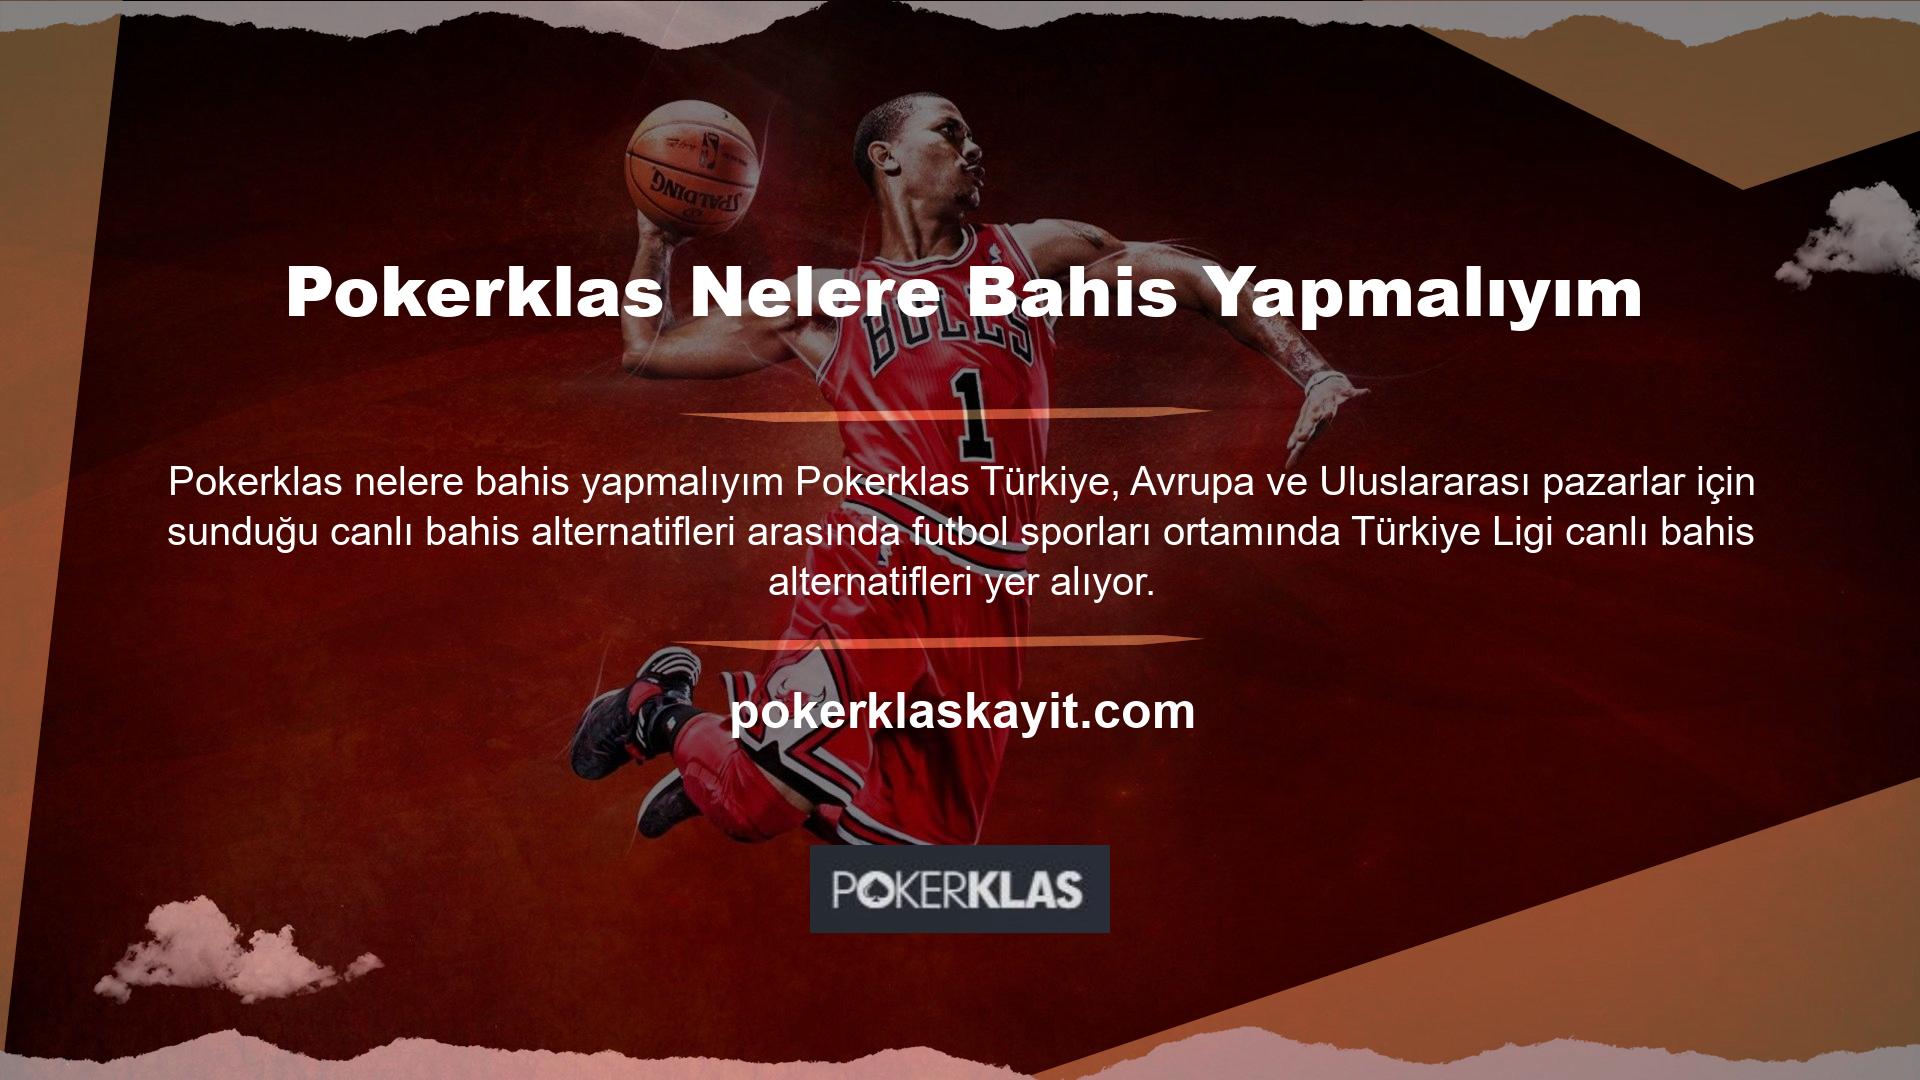 Tüm maçlar canlı bahis organizasyonu uygulamasında yer aldı, sistem Türkiye liginin en iyi gerçek zamanlı bahis oranlarını destekledi ve kullanıcılara maksimum para kazanma fırsatı verdi